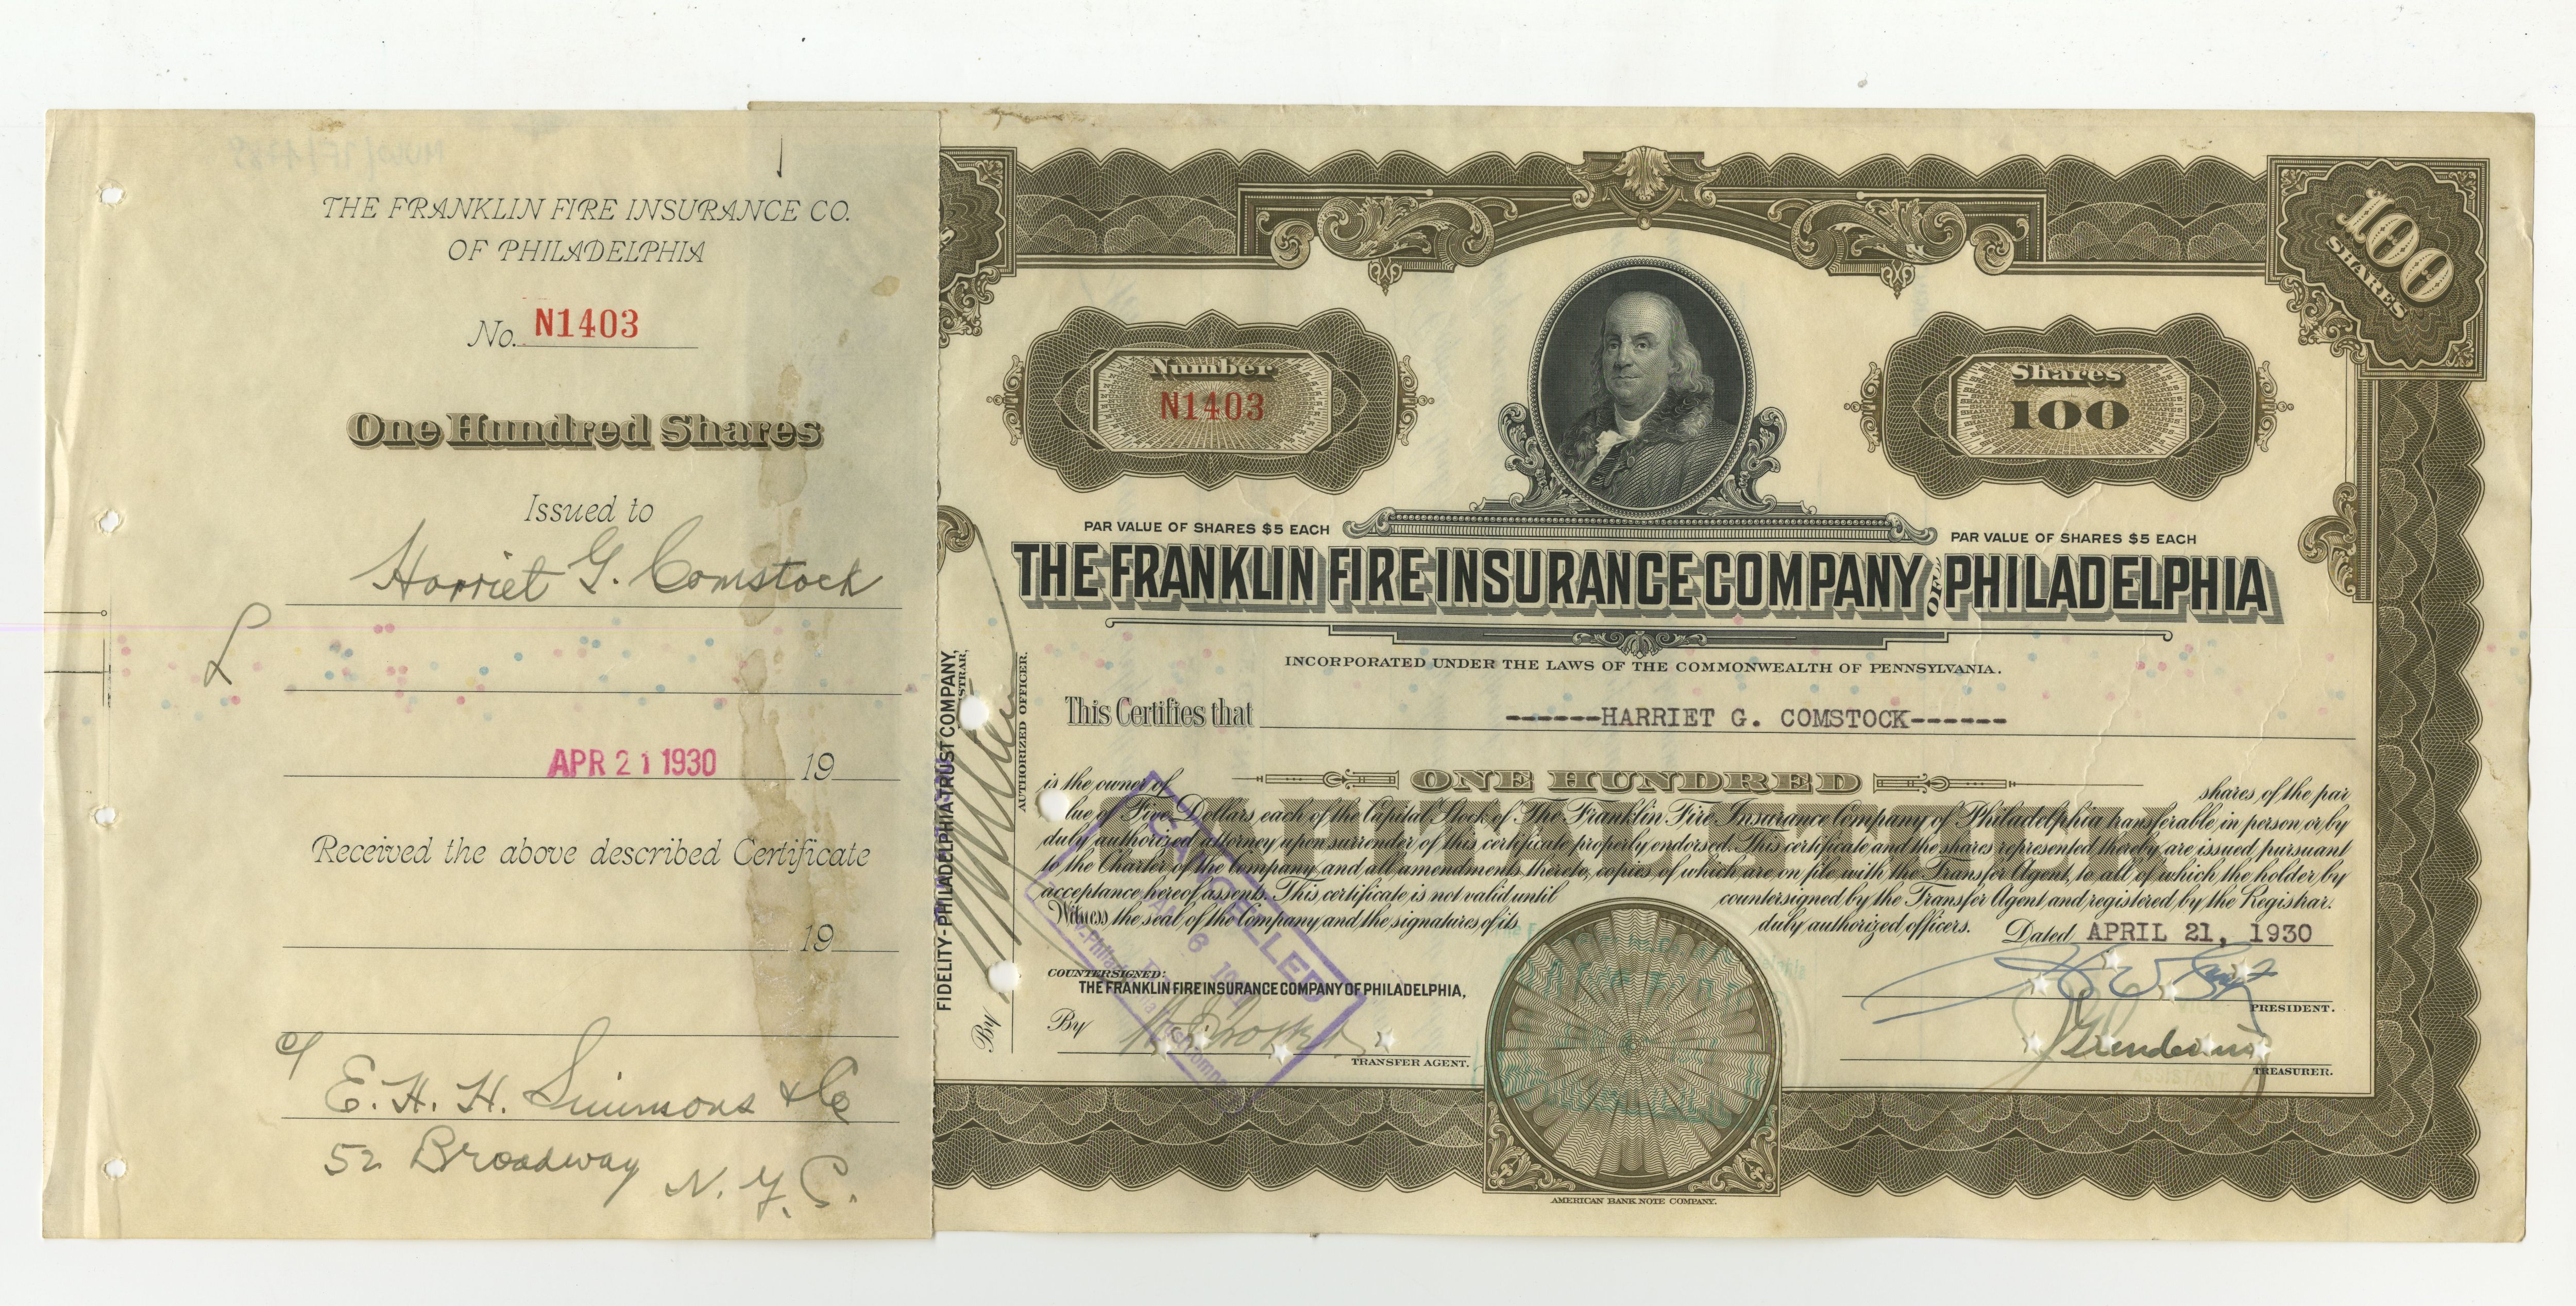 100 akcji The Franklin Fire Insurance Company of Philadelphia z 21 kwietnia 1930 roku.